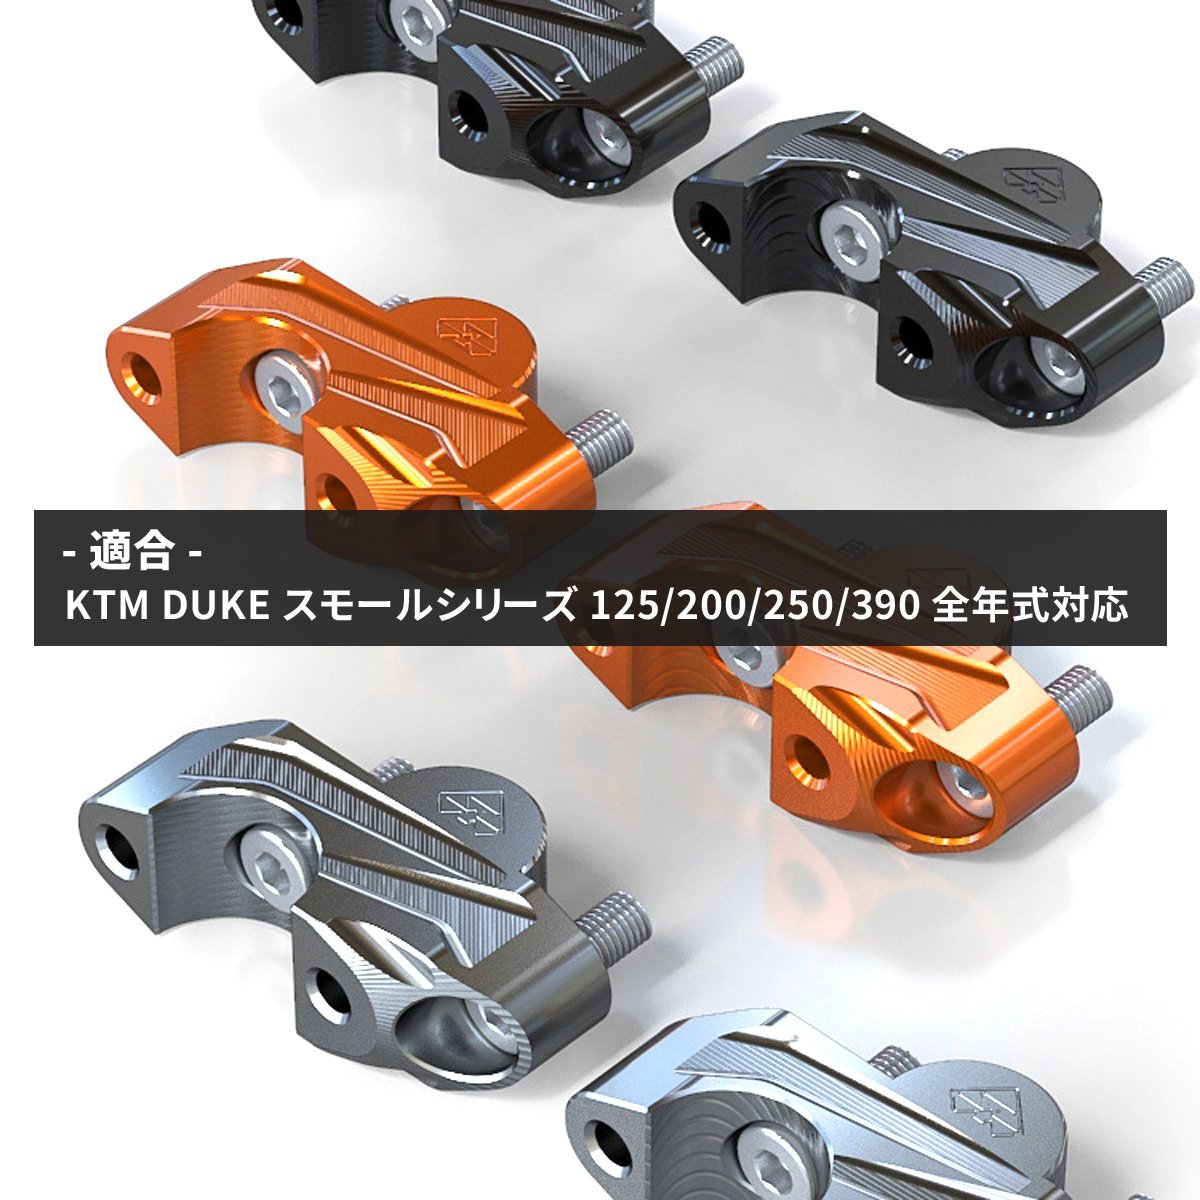 KTM DUKE ハンドルポスト ハンドルバーライザー スモールシリーズ専用 全年式対応 T6アルミ オレンジ SZ938-O_画像3